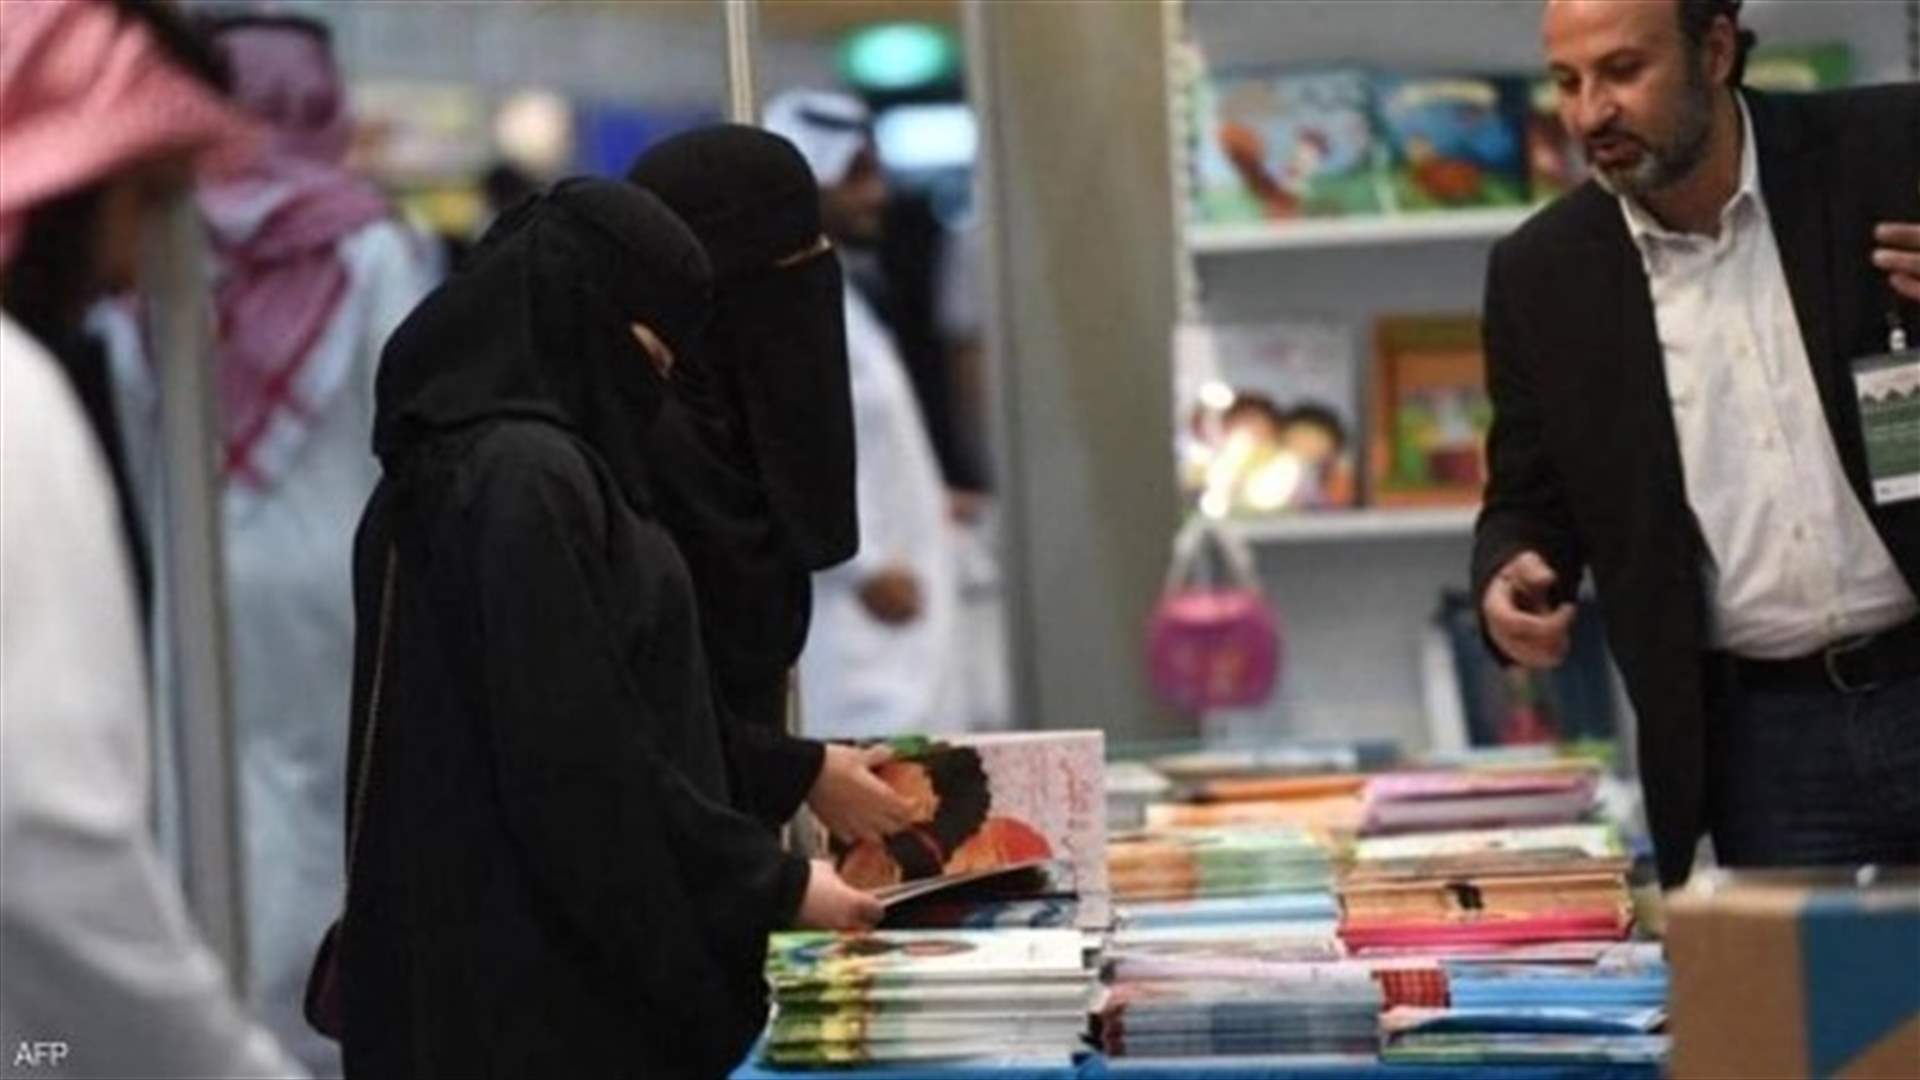 أكبر معرض كتاب في السعودية يفتح أبوابه بعد إغلاق بسبب كورونا